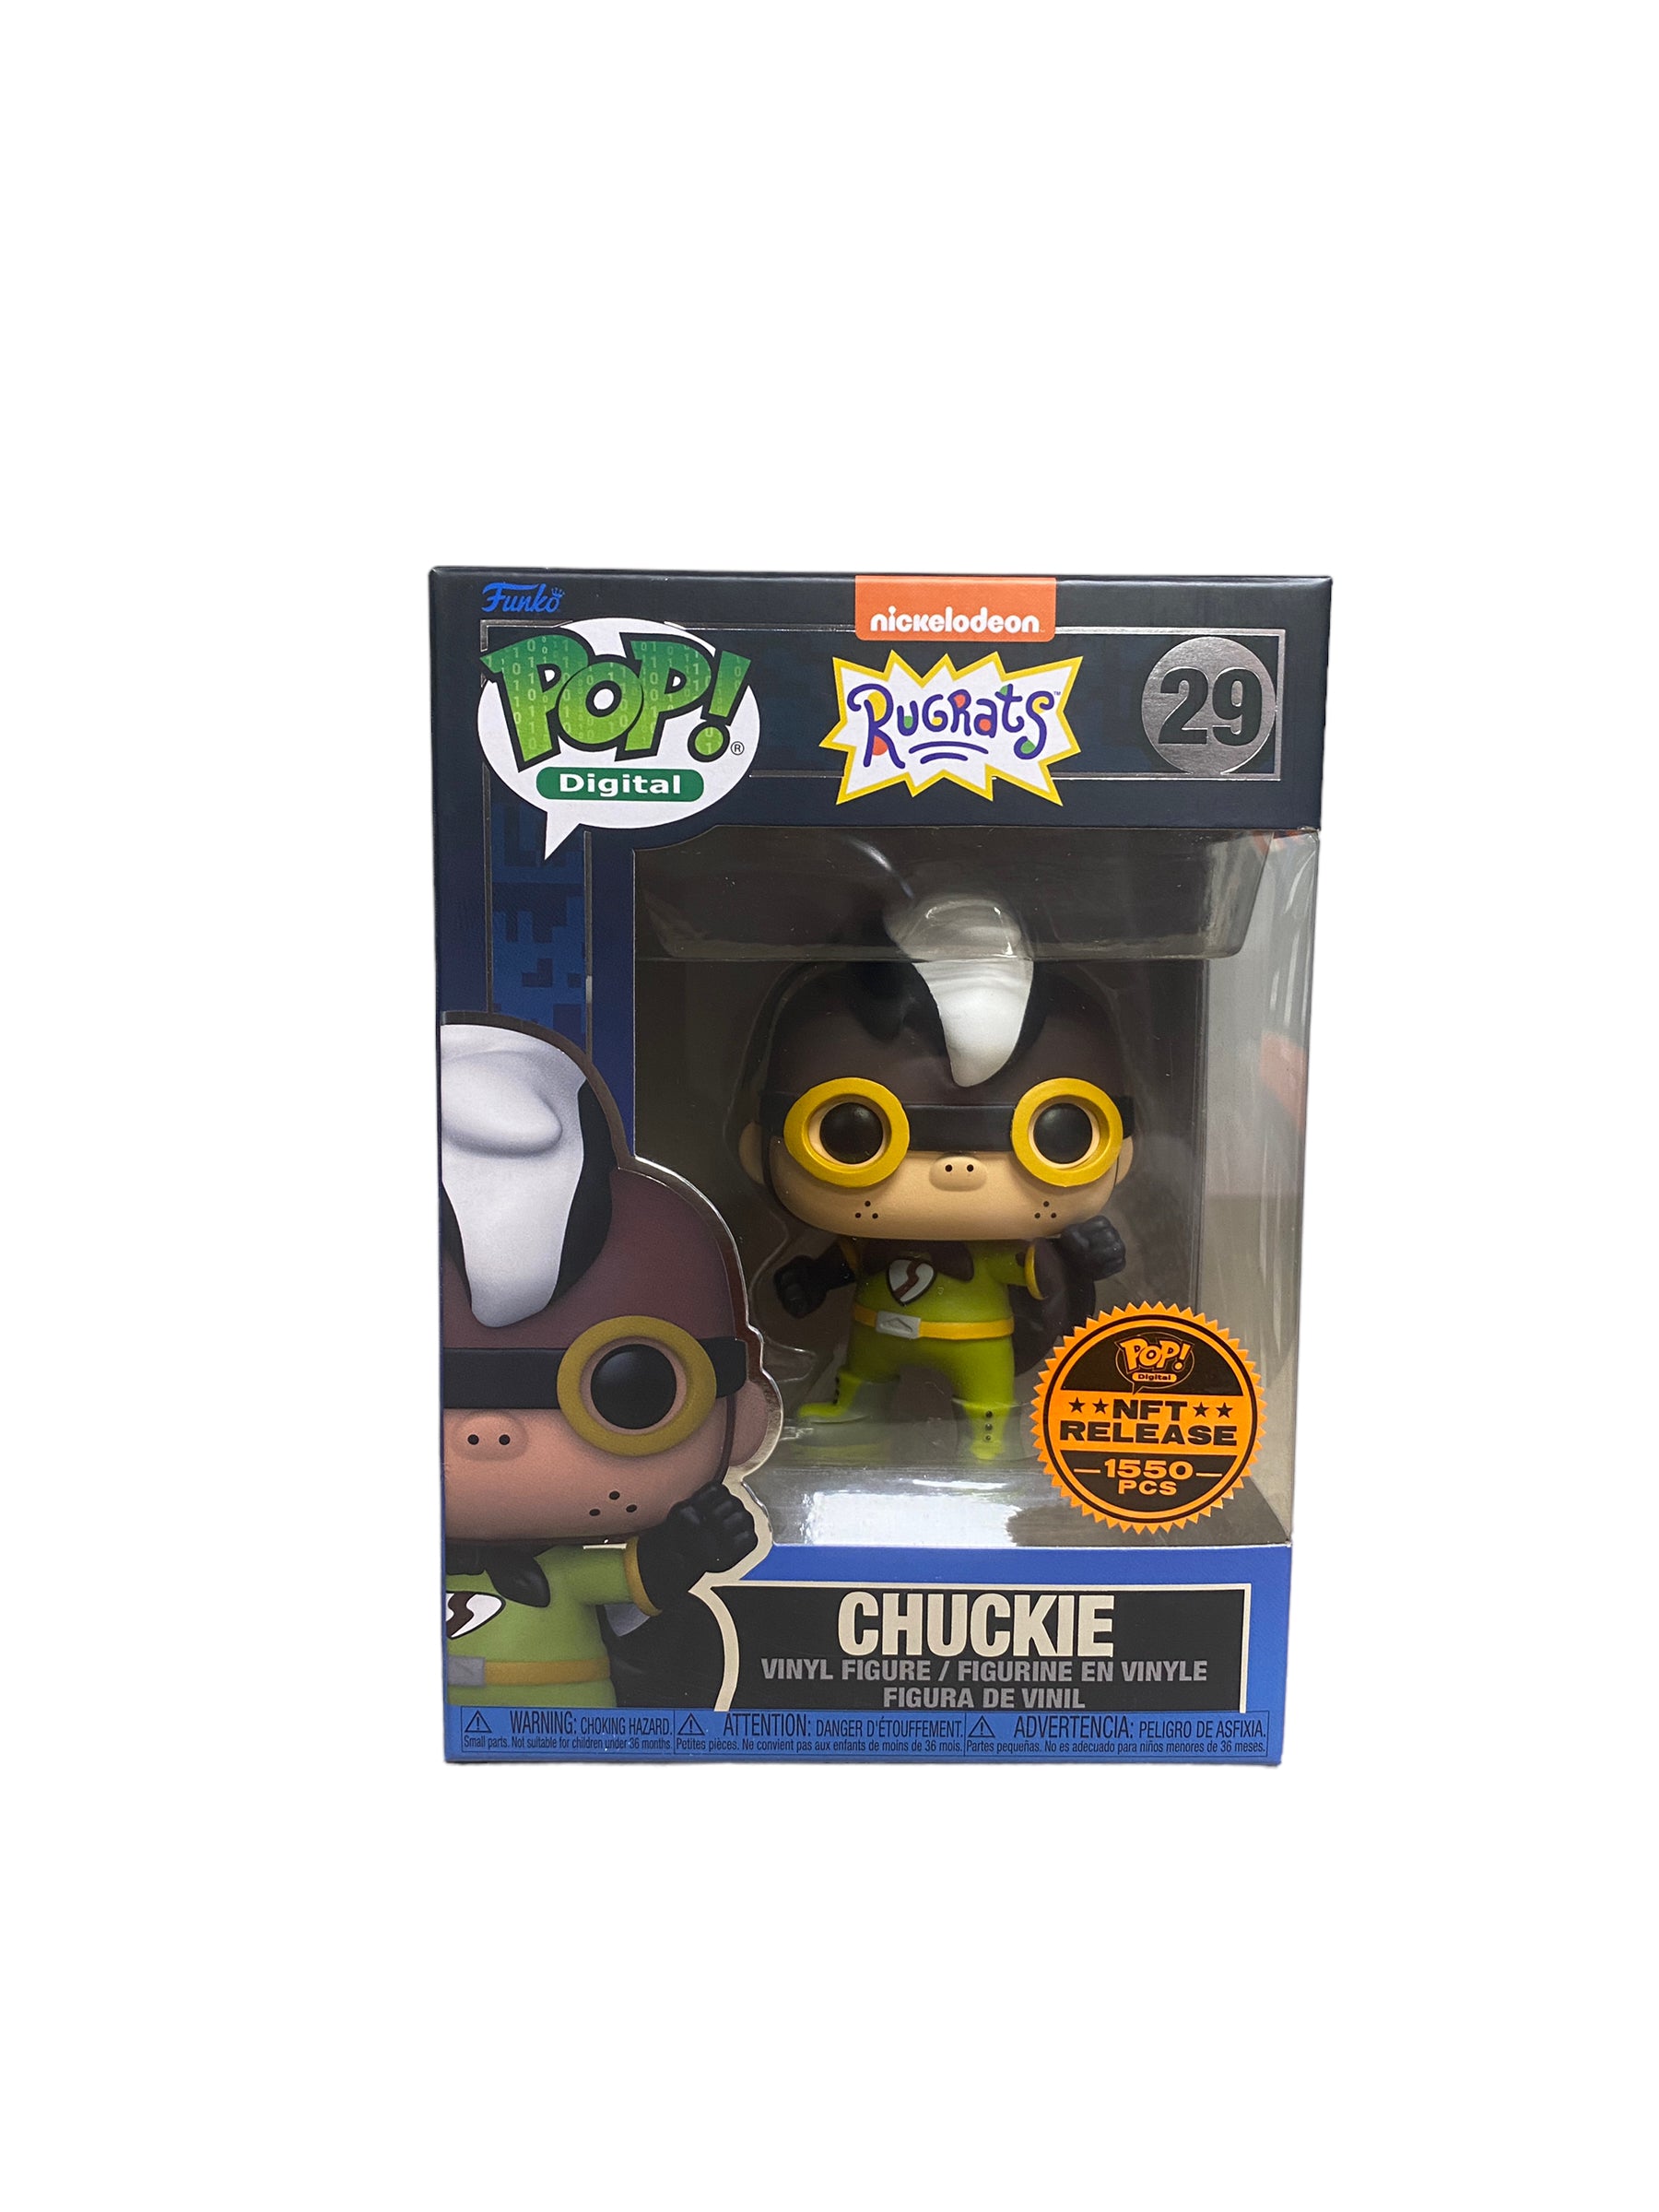 Chuckie #29 Funko Pop! - Rugrats - NFT Release Exclusive LE1550 Pcs - Condition 8.5/10